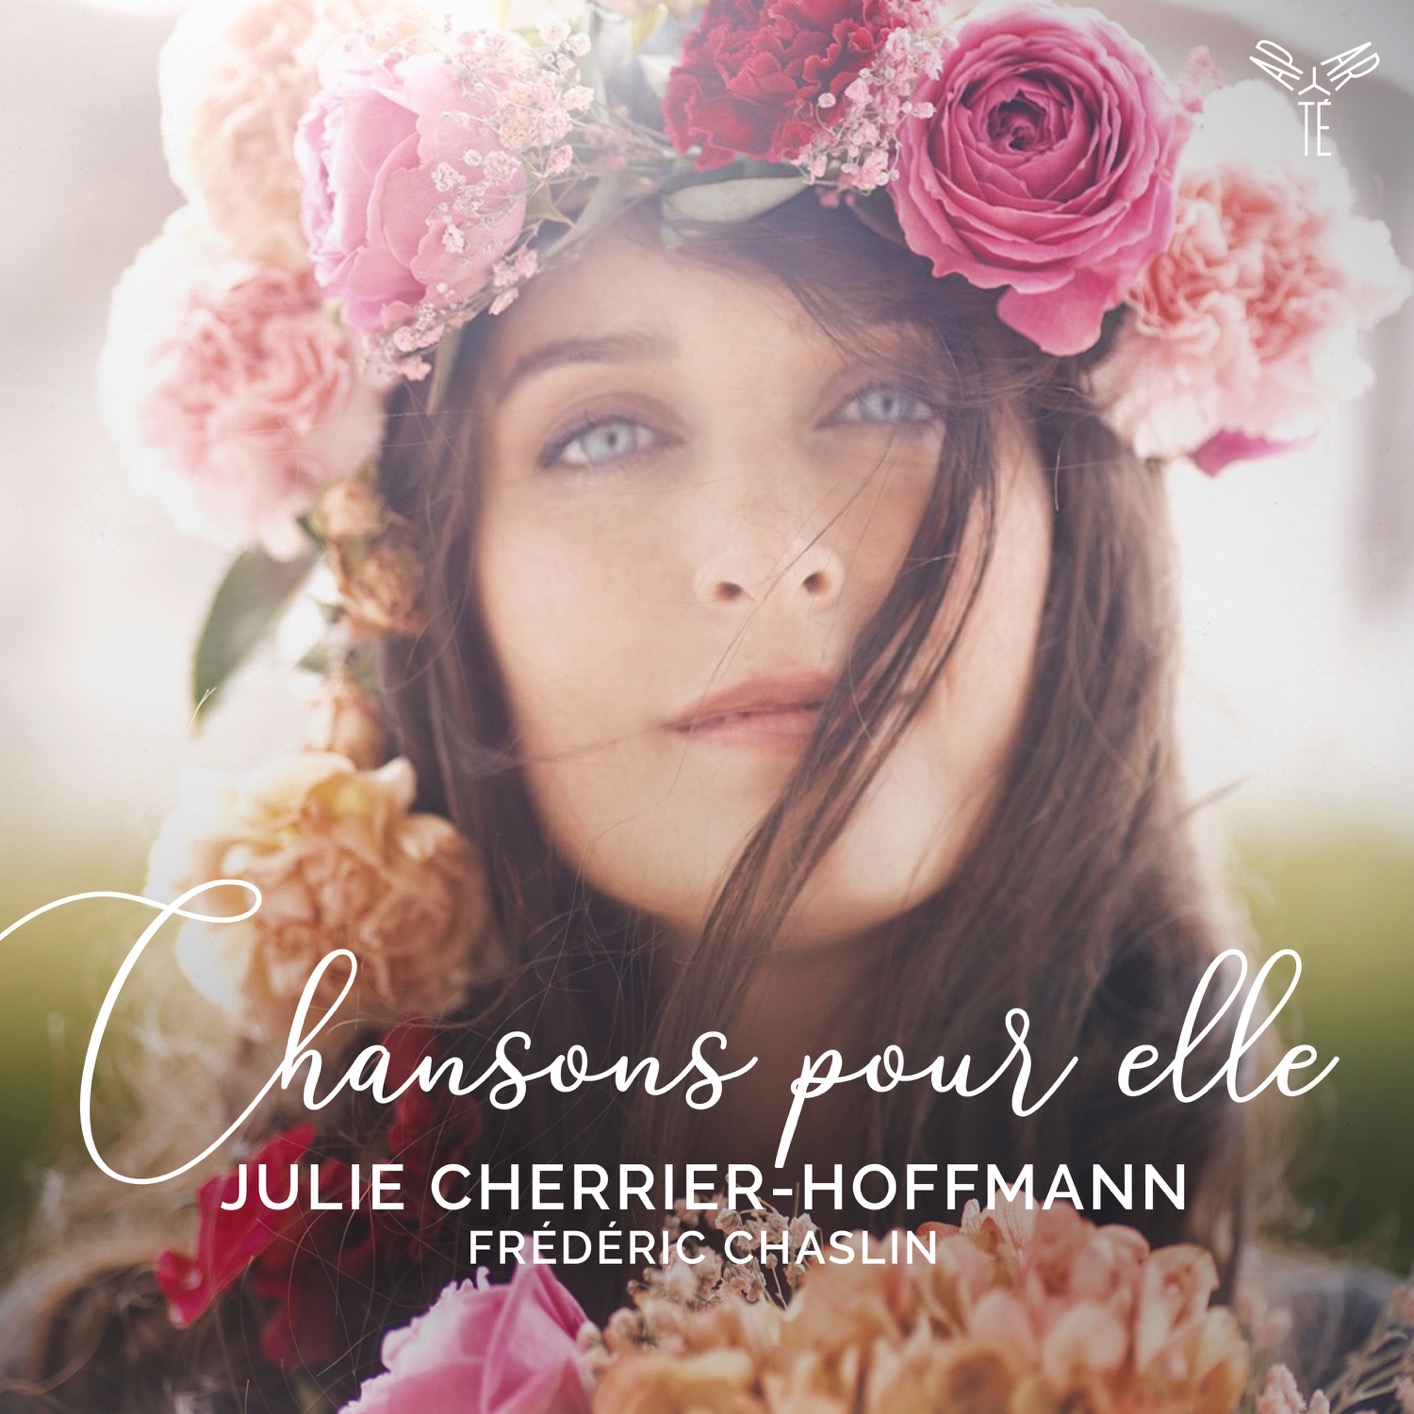 Julie Cherrier-Hoffmann & Frederic Chaslin - Chansons pour elle (2021) [FLAC 24bit/96kHz]